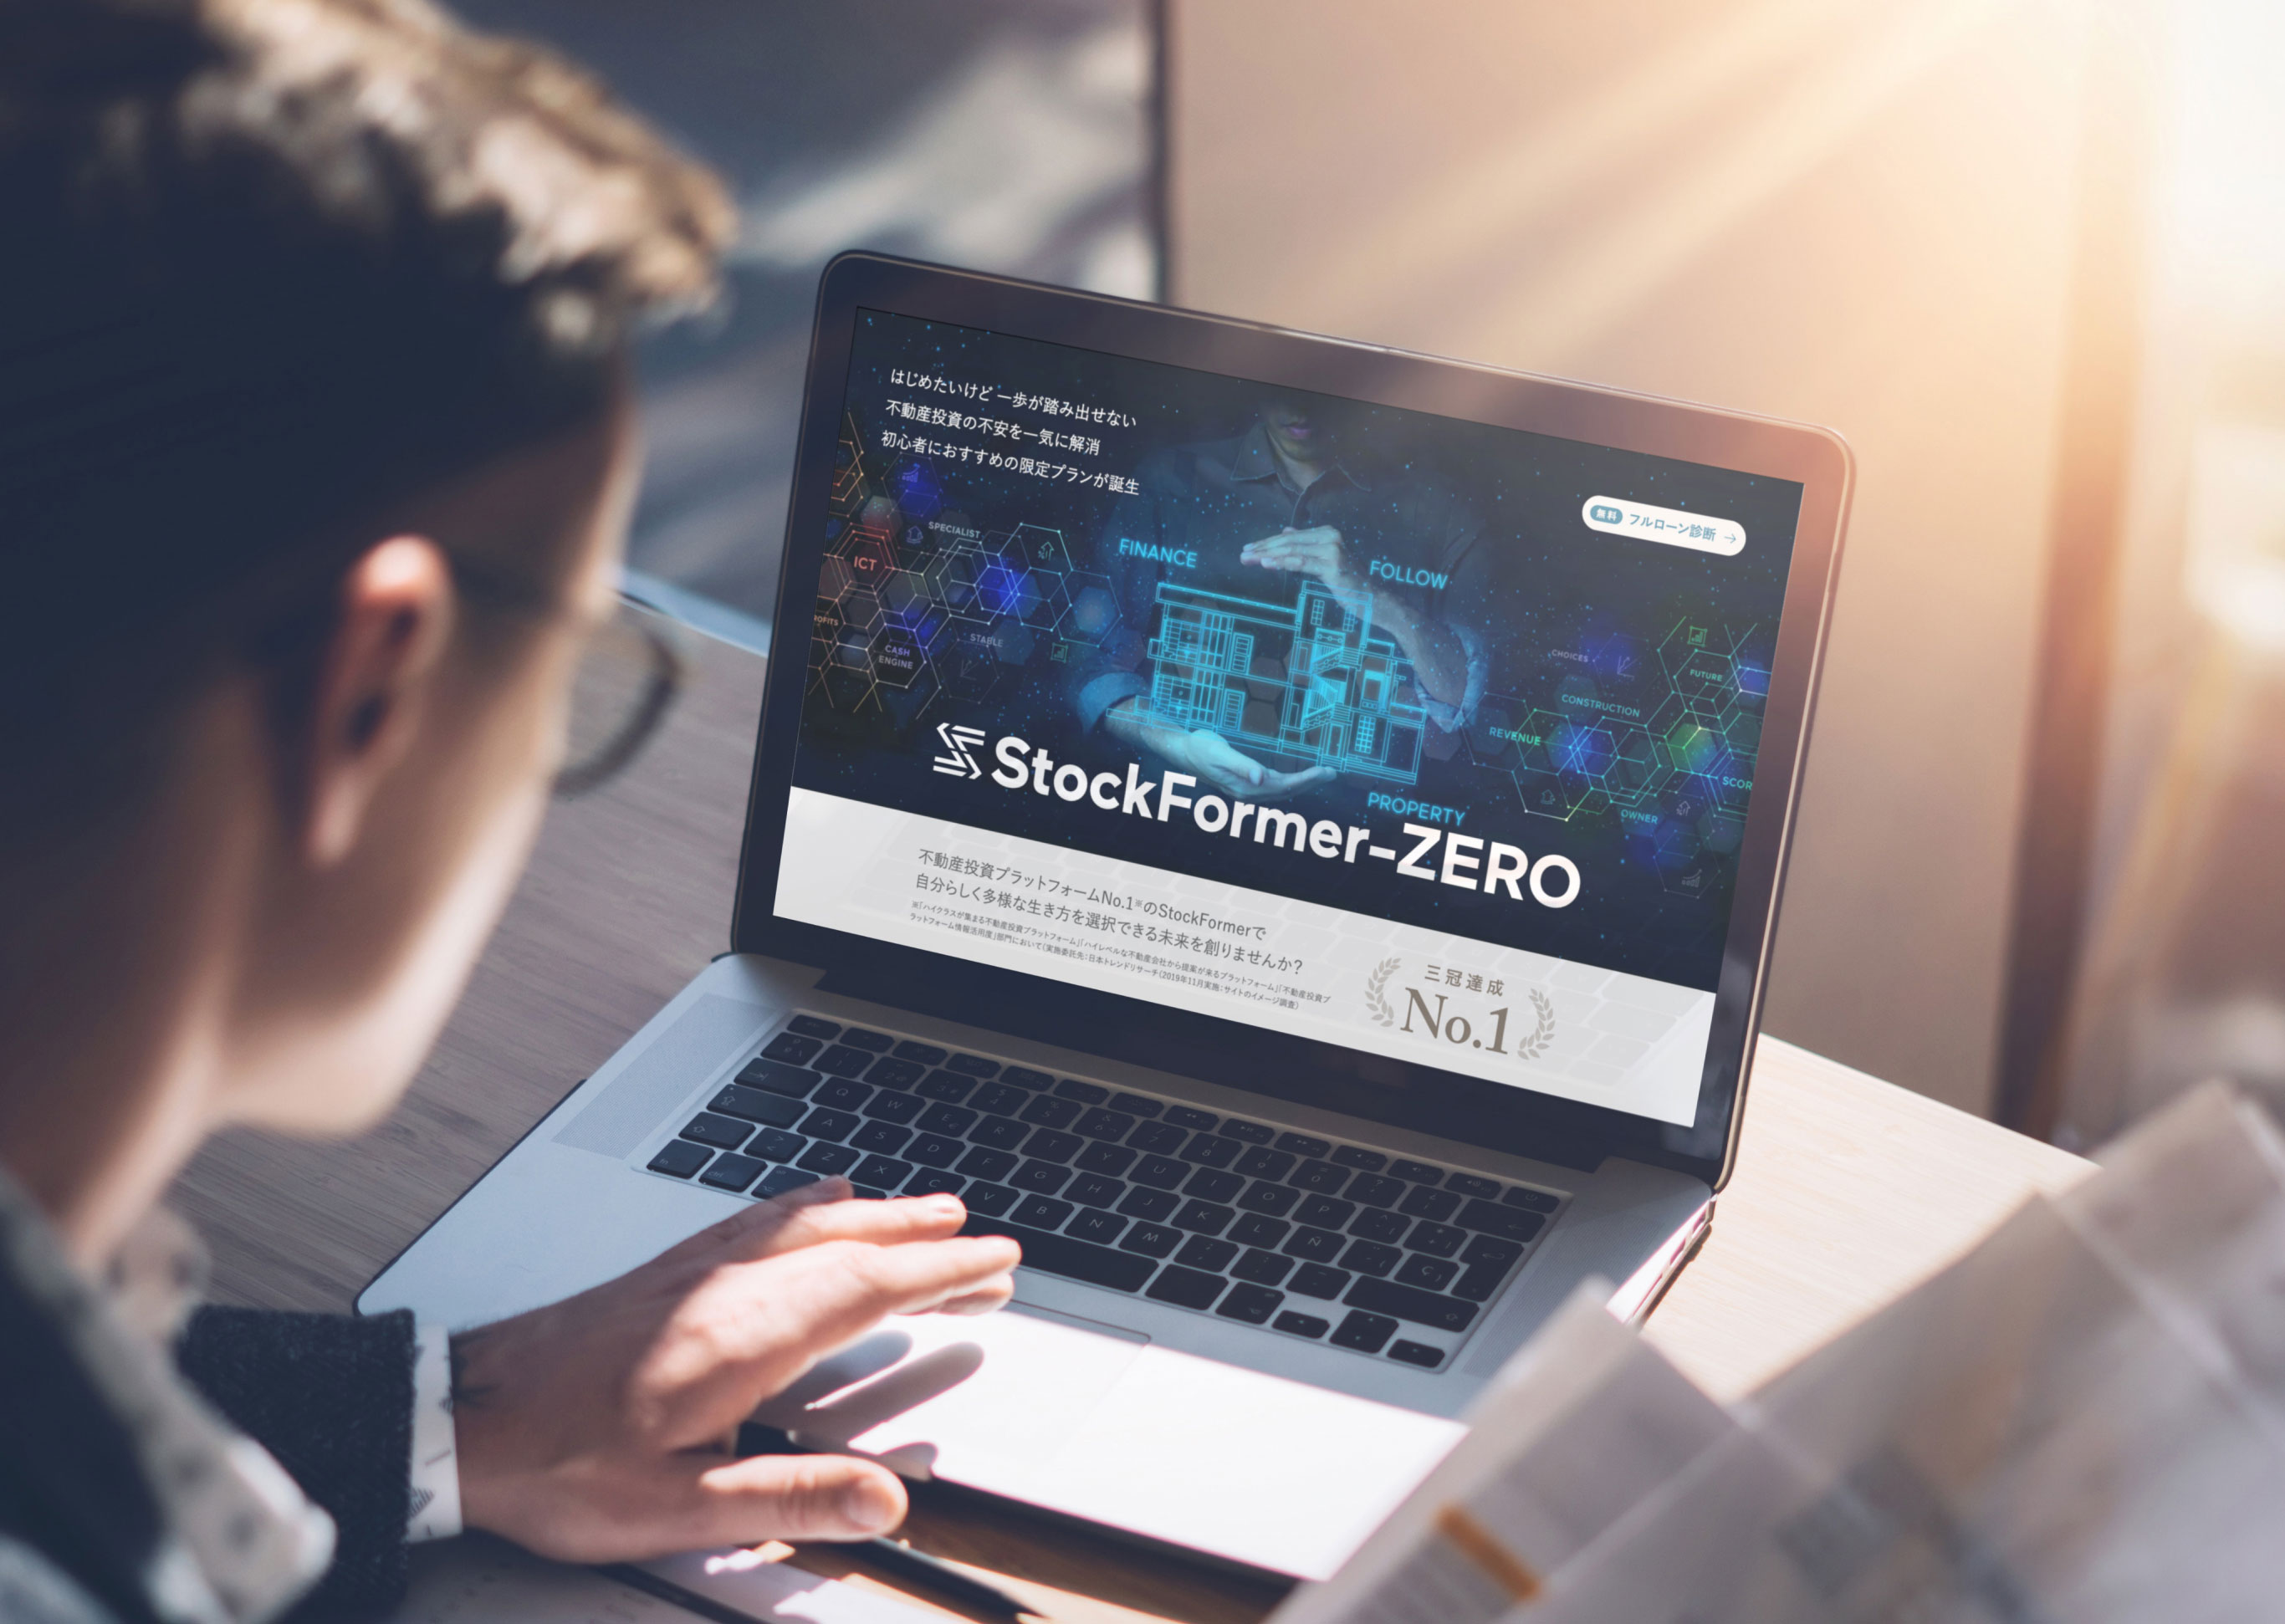 stock_former_zero